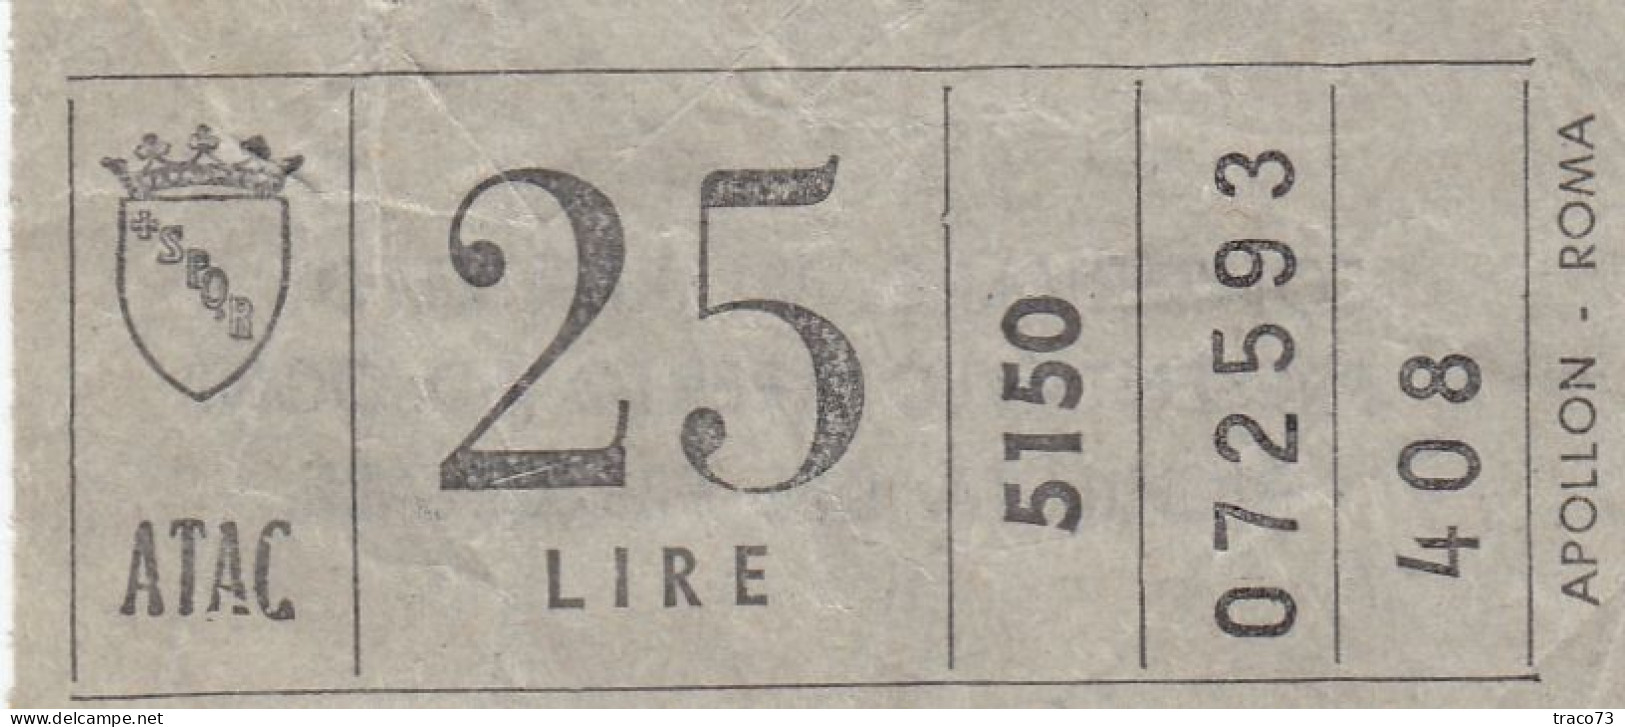 ATAC - ROMA  _ Anni '50-'60 /  Ticket  _ Biglietto Da Lire 25 - Europa